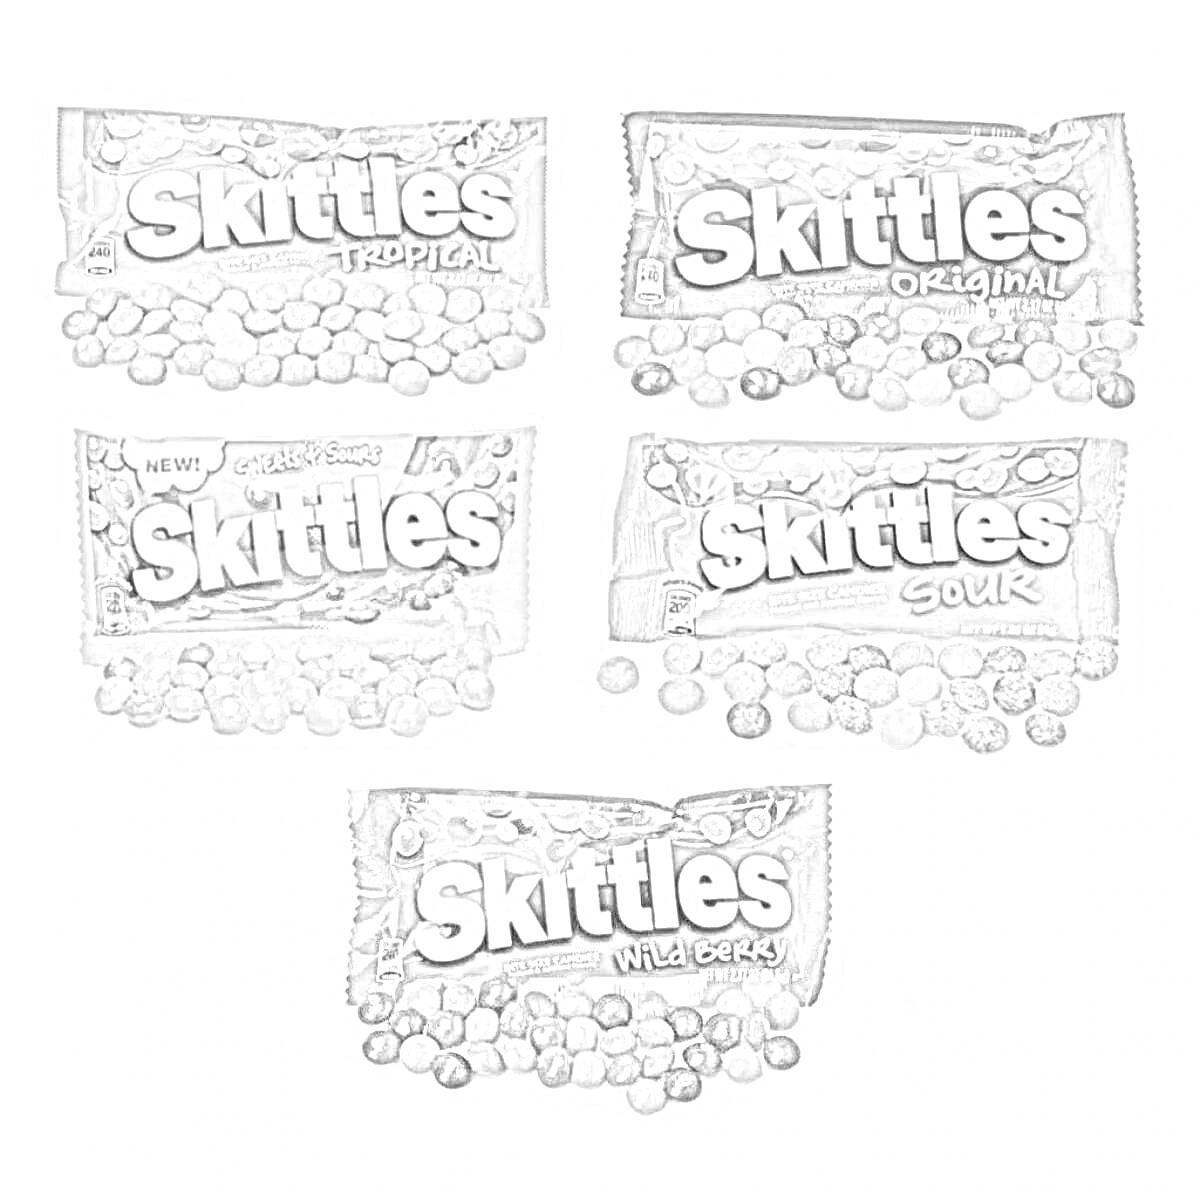 Раскраска Разнообразие вкусов Skittles: Tropical, Original, Smoothies, Sour и Wild Berry, изображение упаковок с конфетами